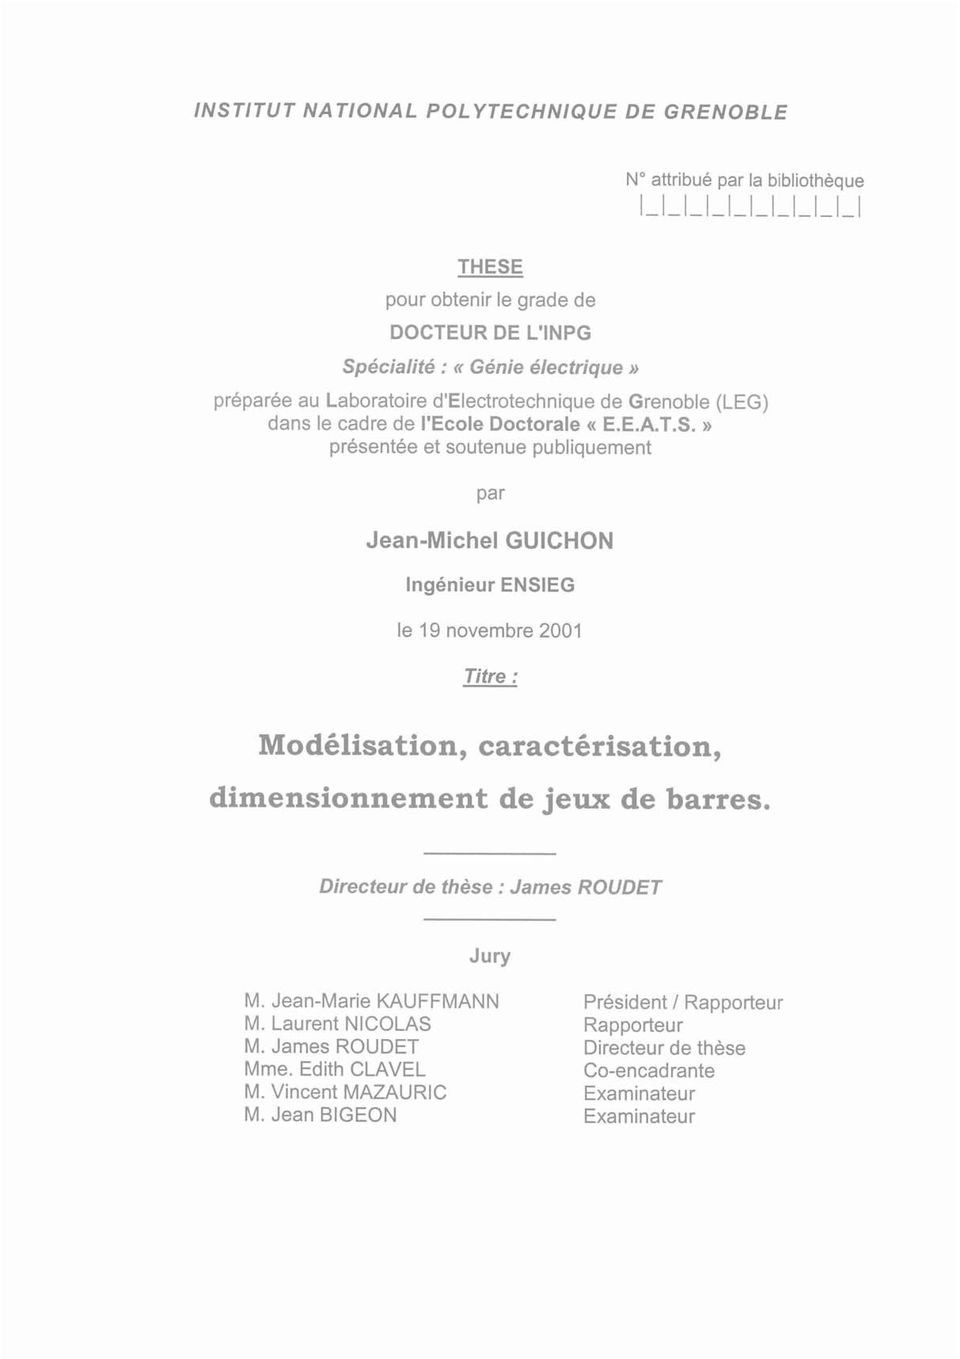 » présentée et soutenue publiquement par Jean-Michel GUICHON Ingénieur ENSIEG le 19 novembre 2001 Titre: Modélisation, caractérisation, dimensionnement de jeux de barres.